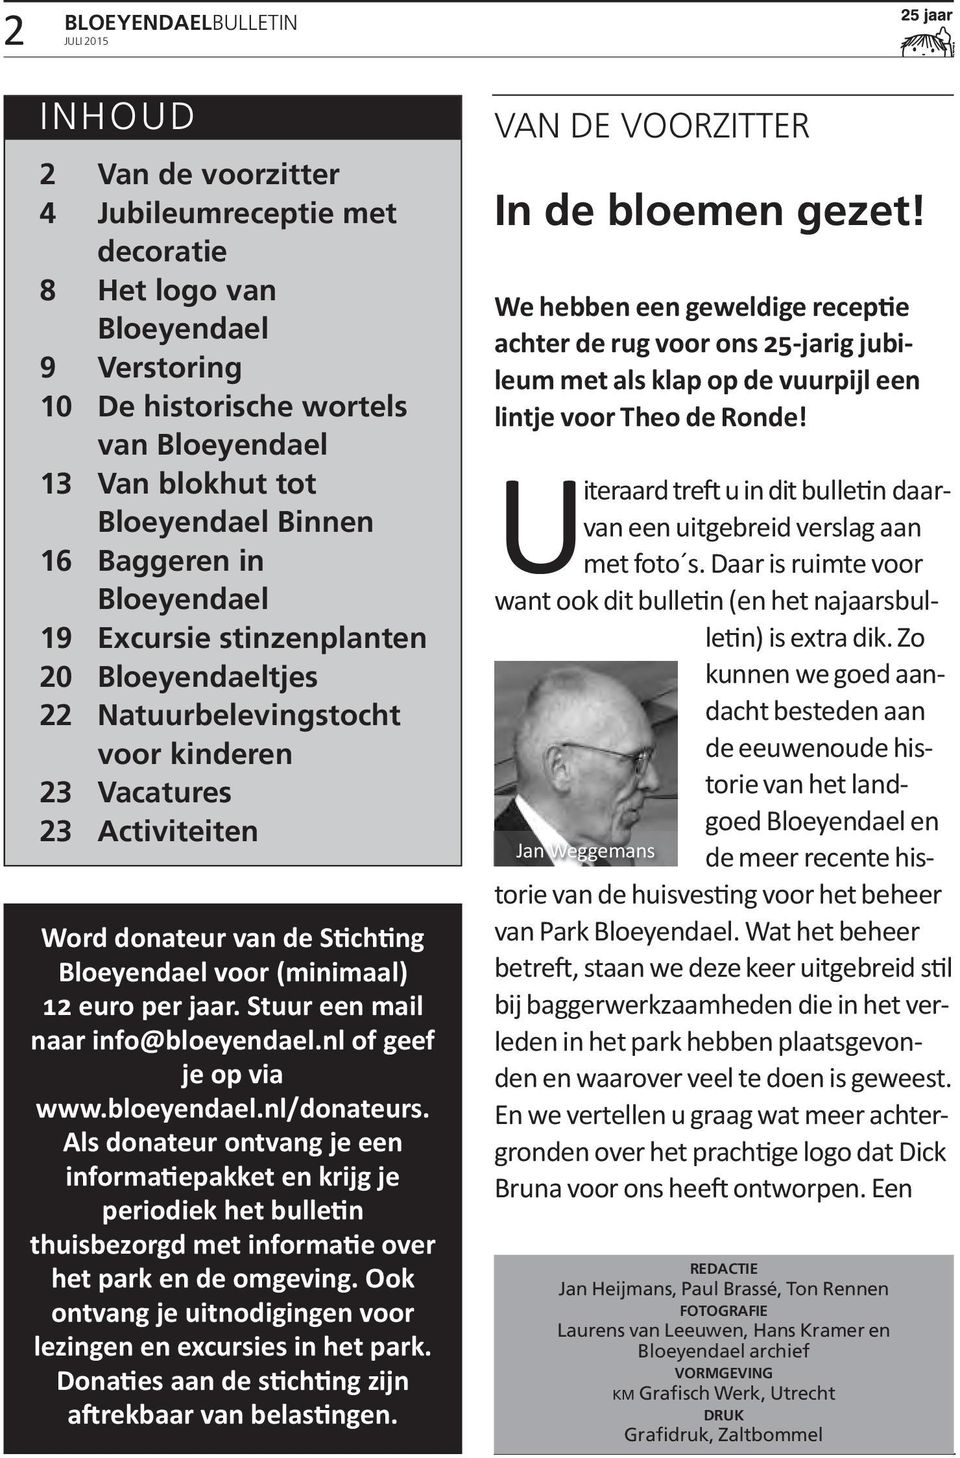 (minimaal) 12 euro per jaar. Stuur een mail naar info@bloeyendael.nl of geef je op via www.bloeyendael.nl/donateurs.